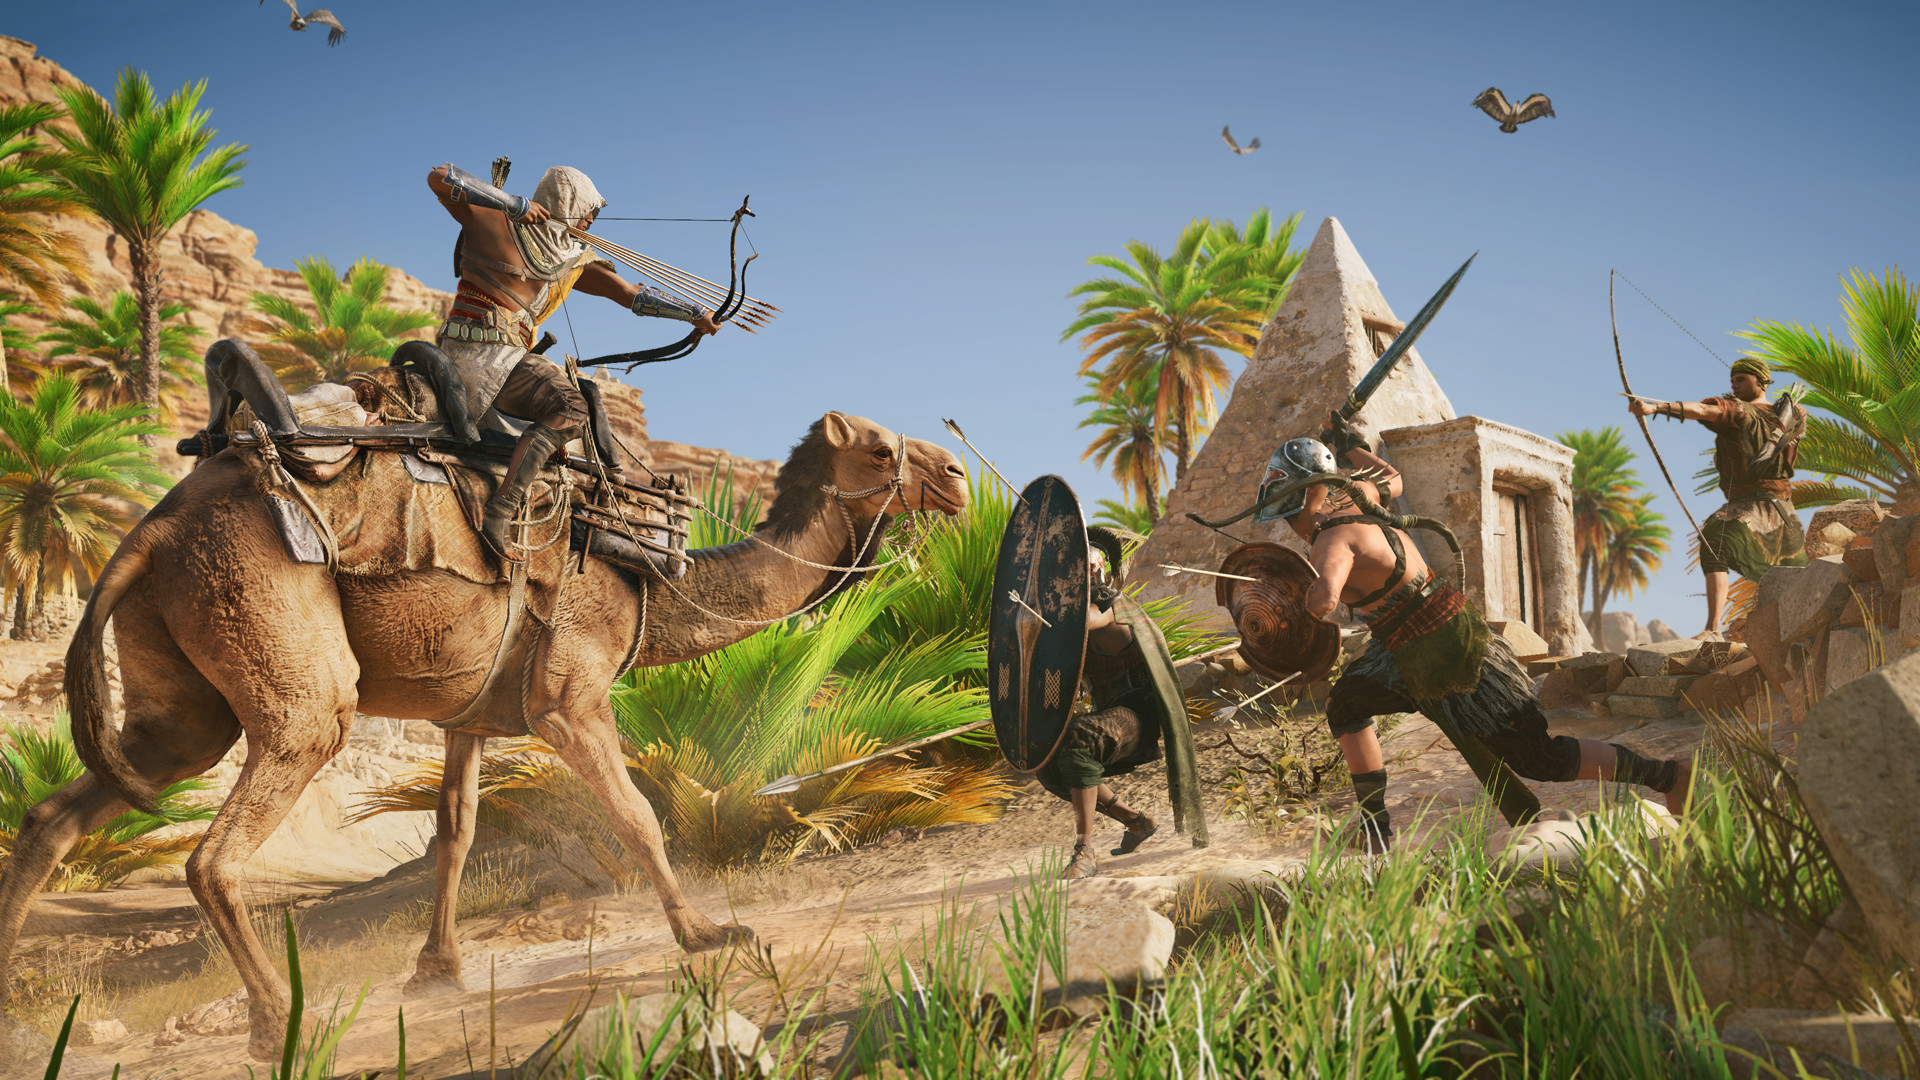 Assassin's Creed Origins (Steam store version) - Steam Deck